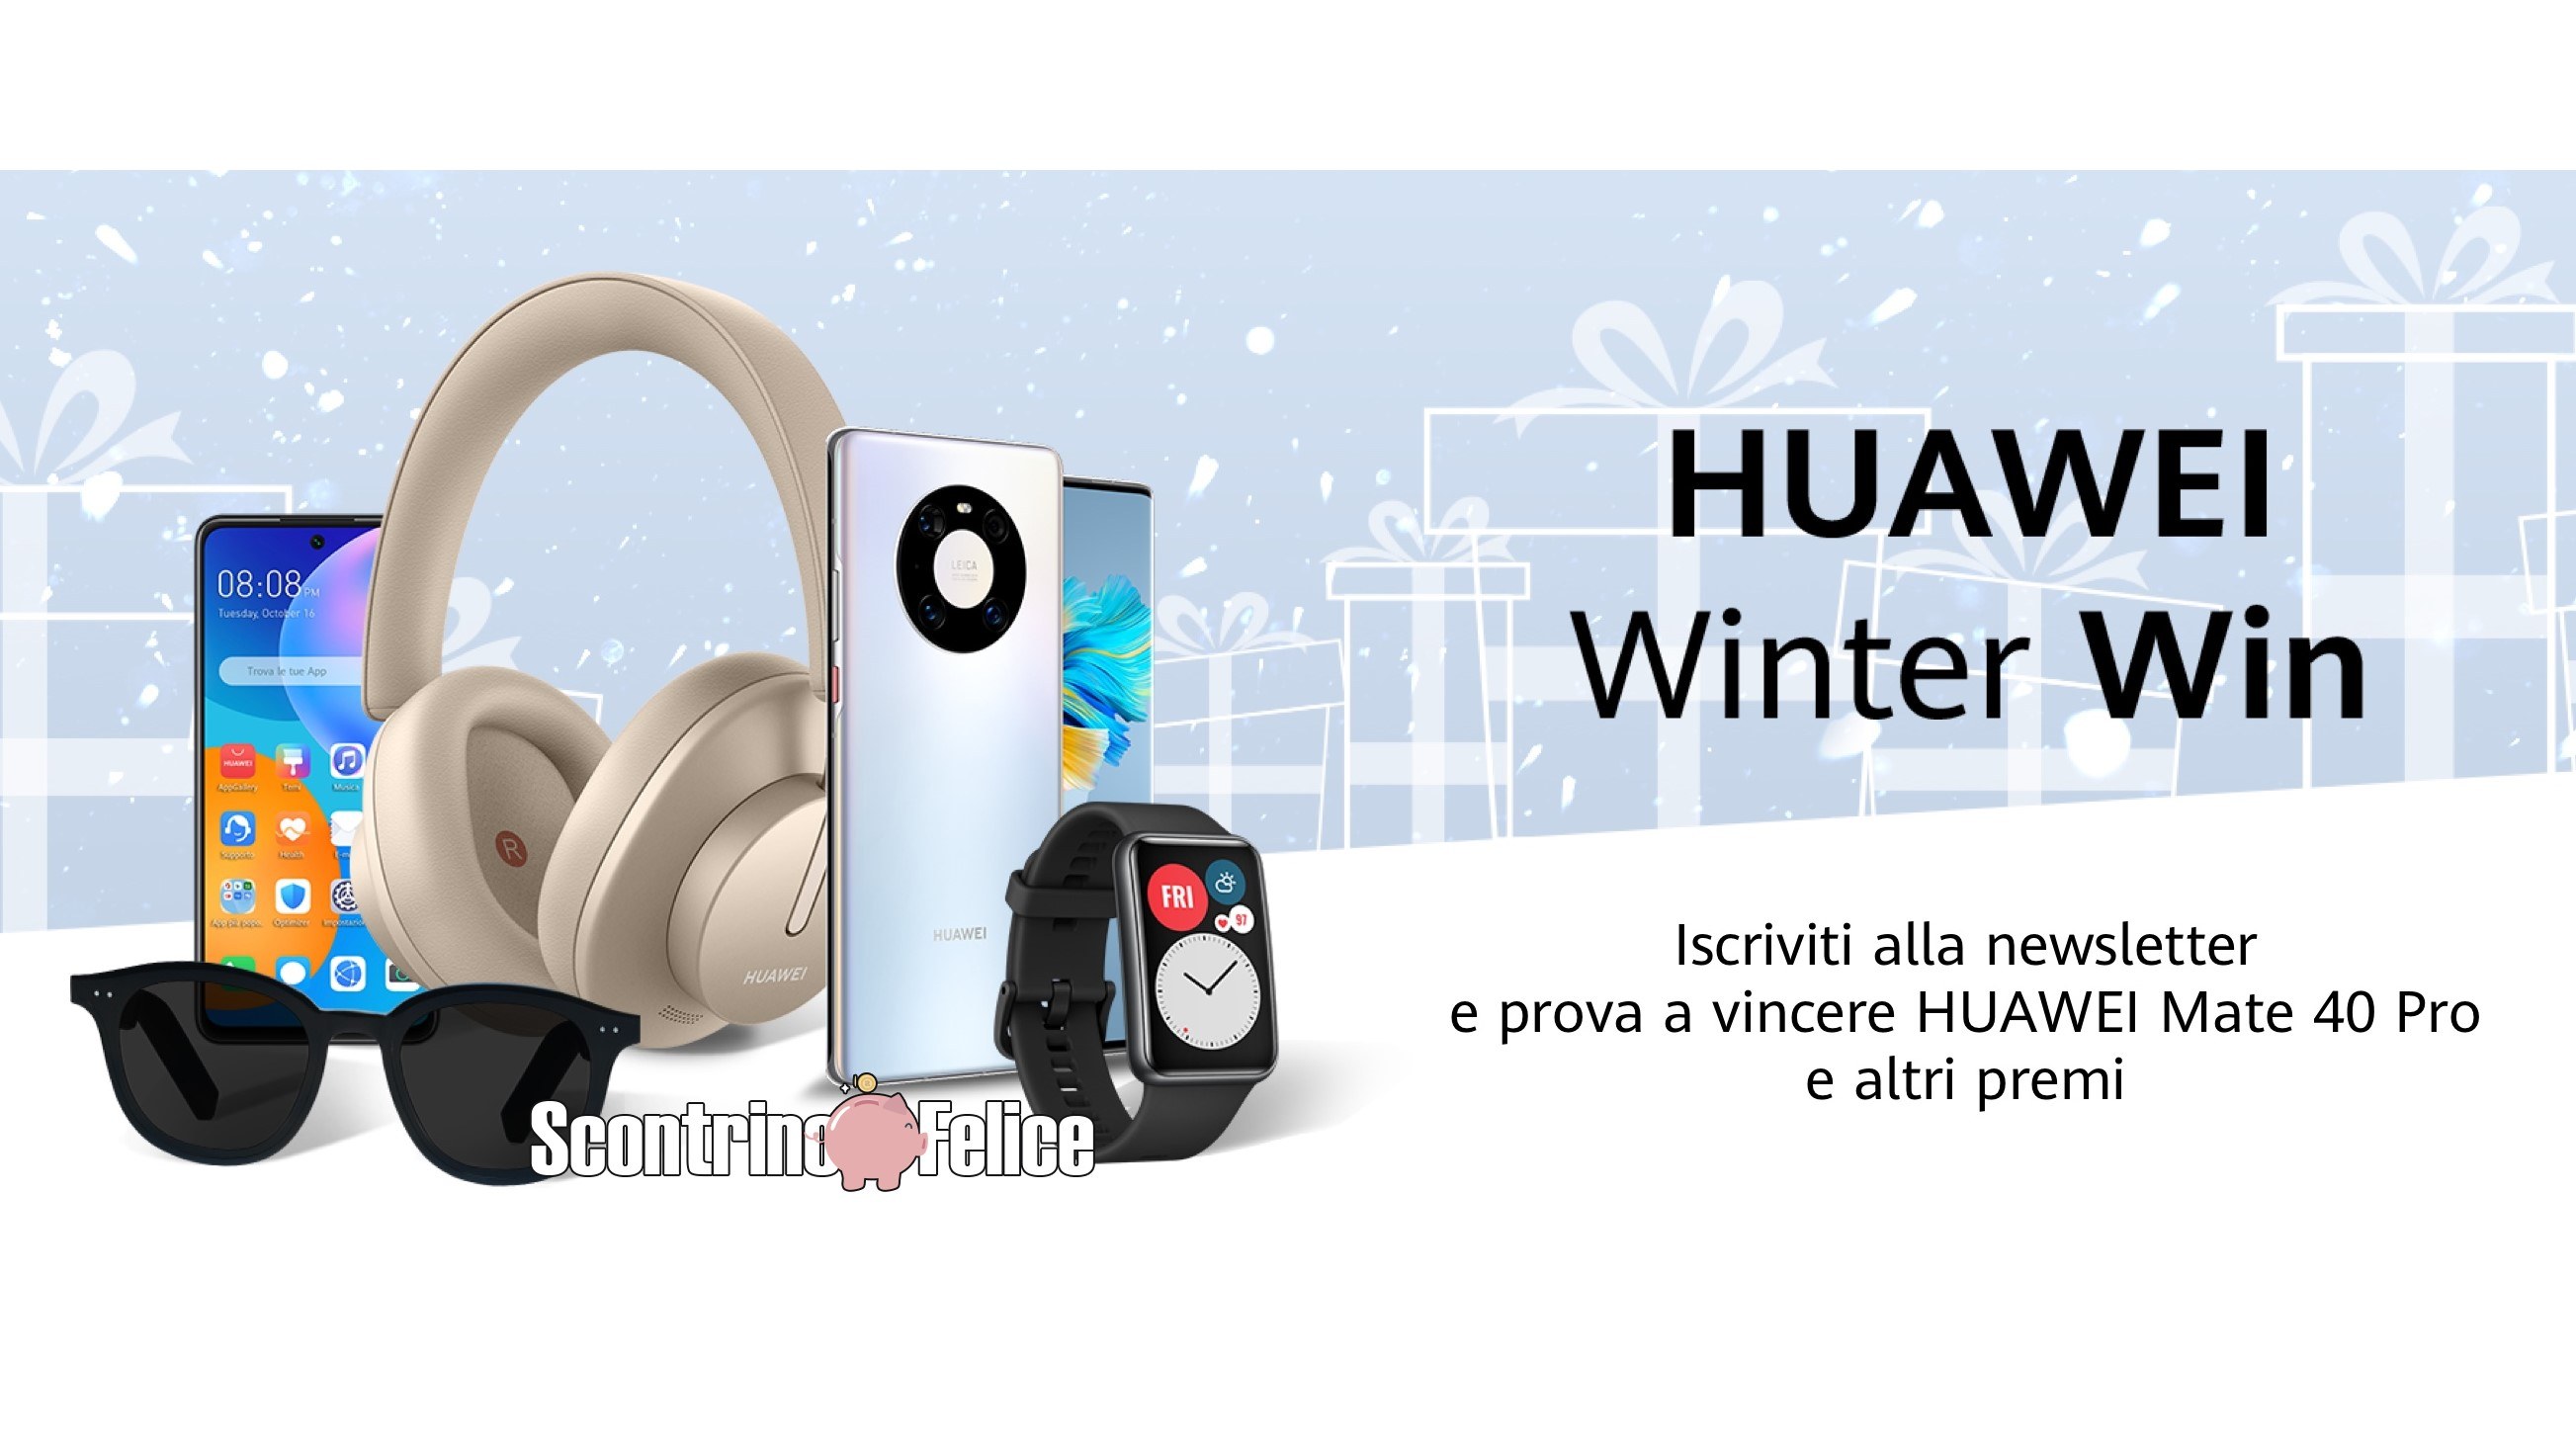 Huawei Winter Win